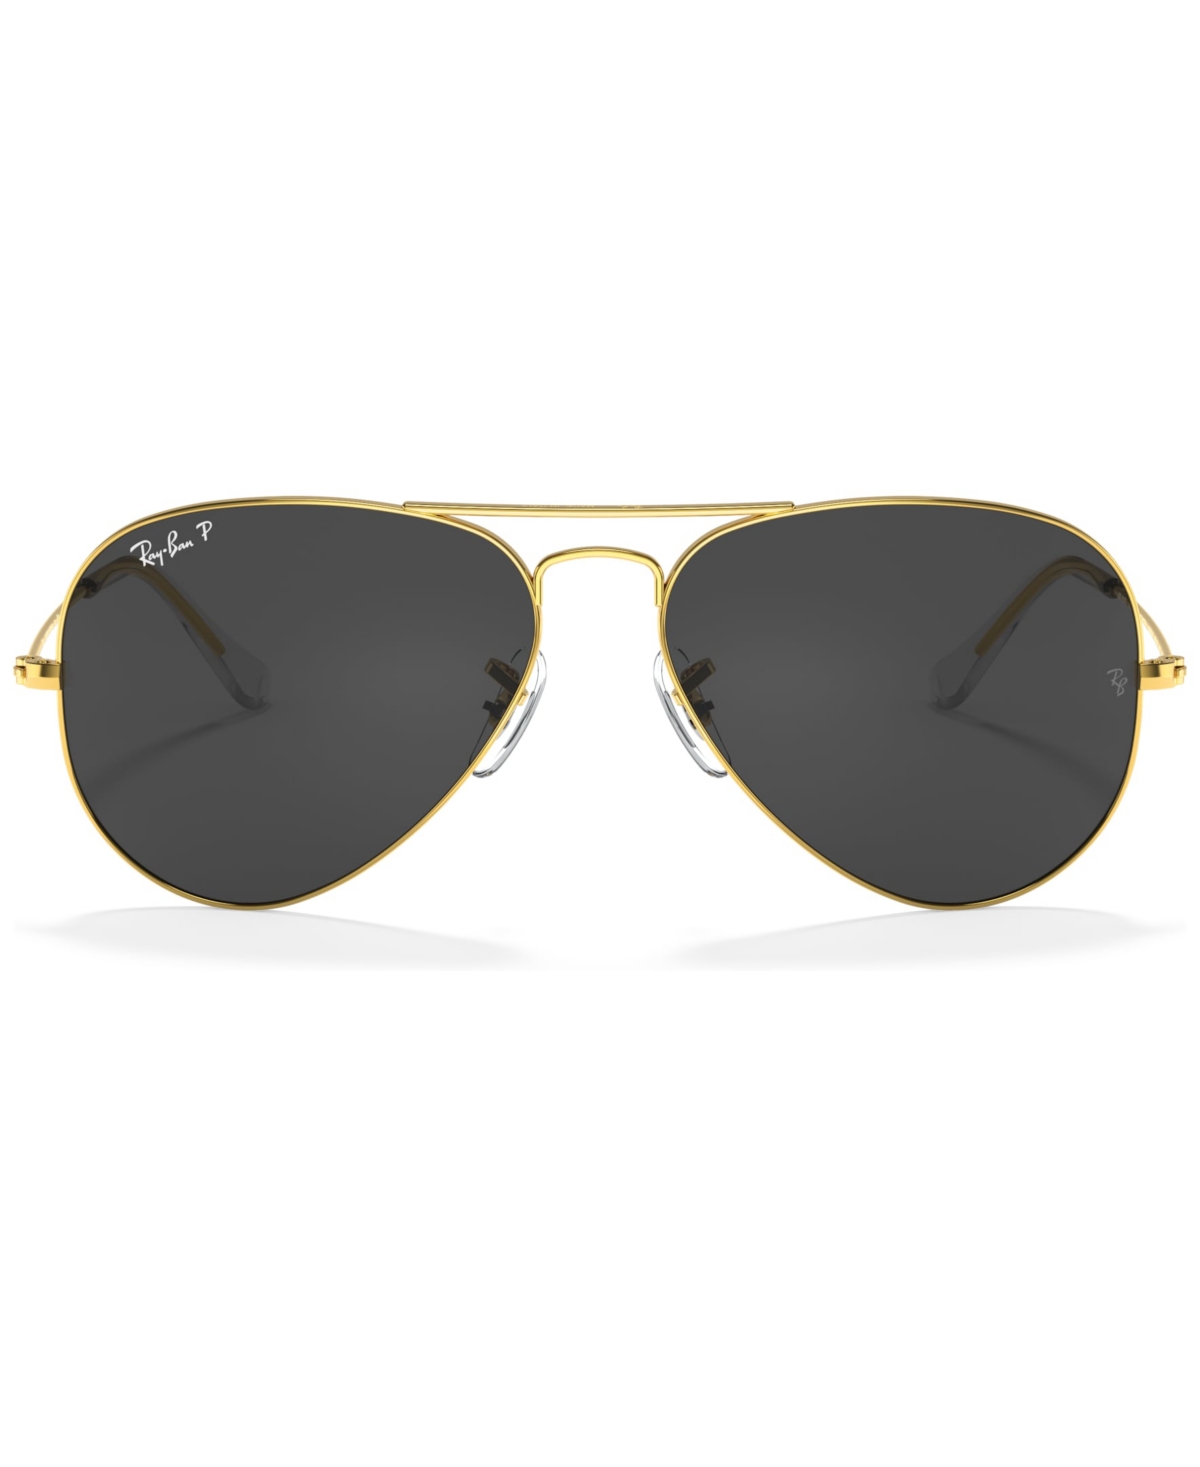 Sunglasses, RB3025 CLASSIC - Macy's